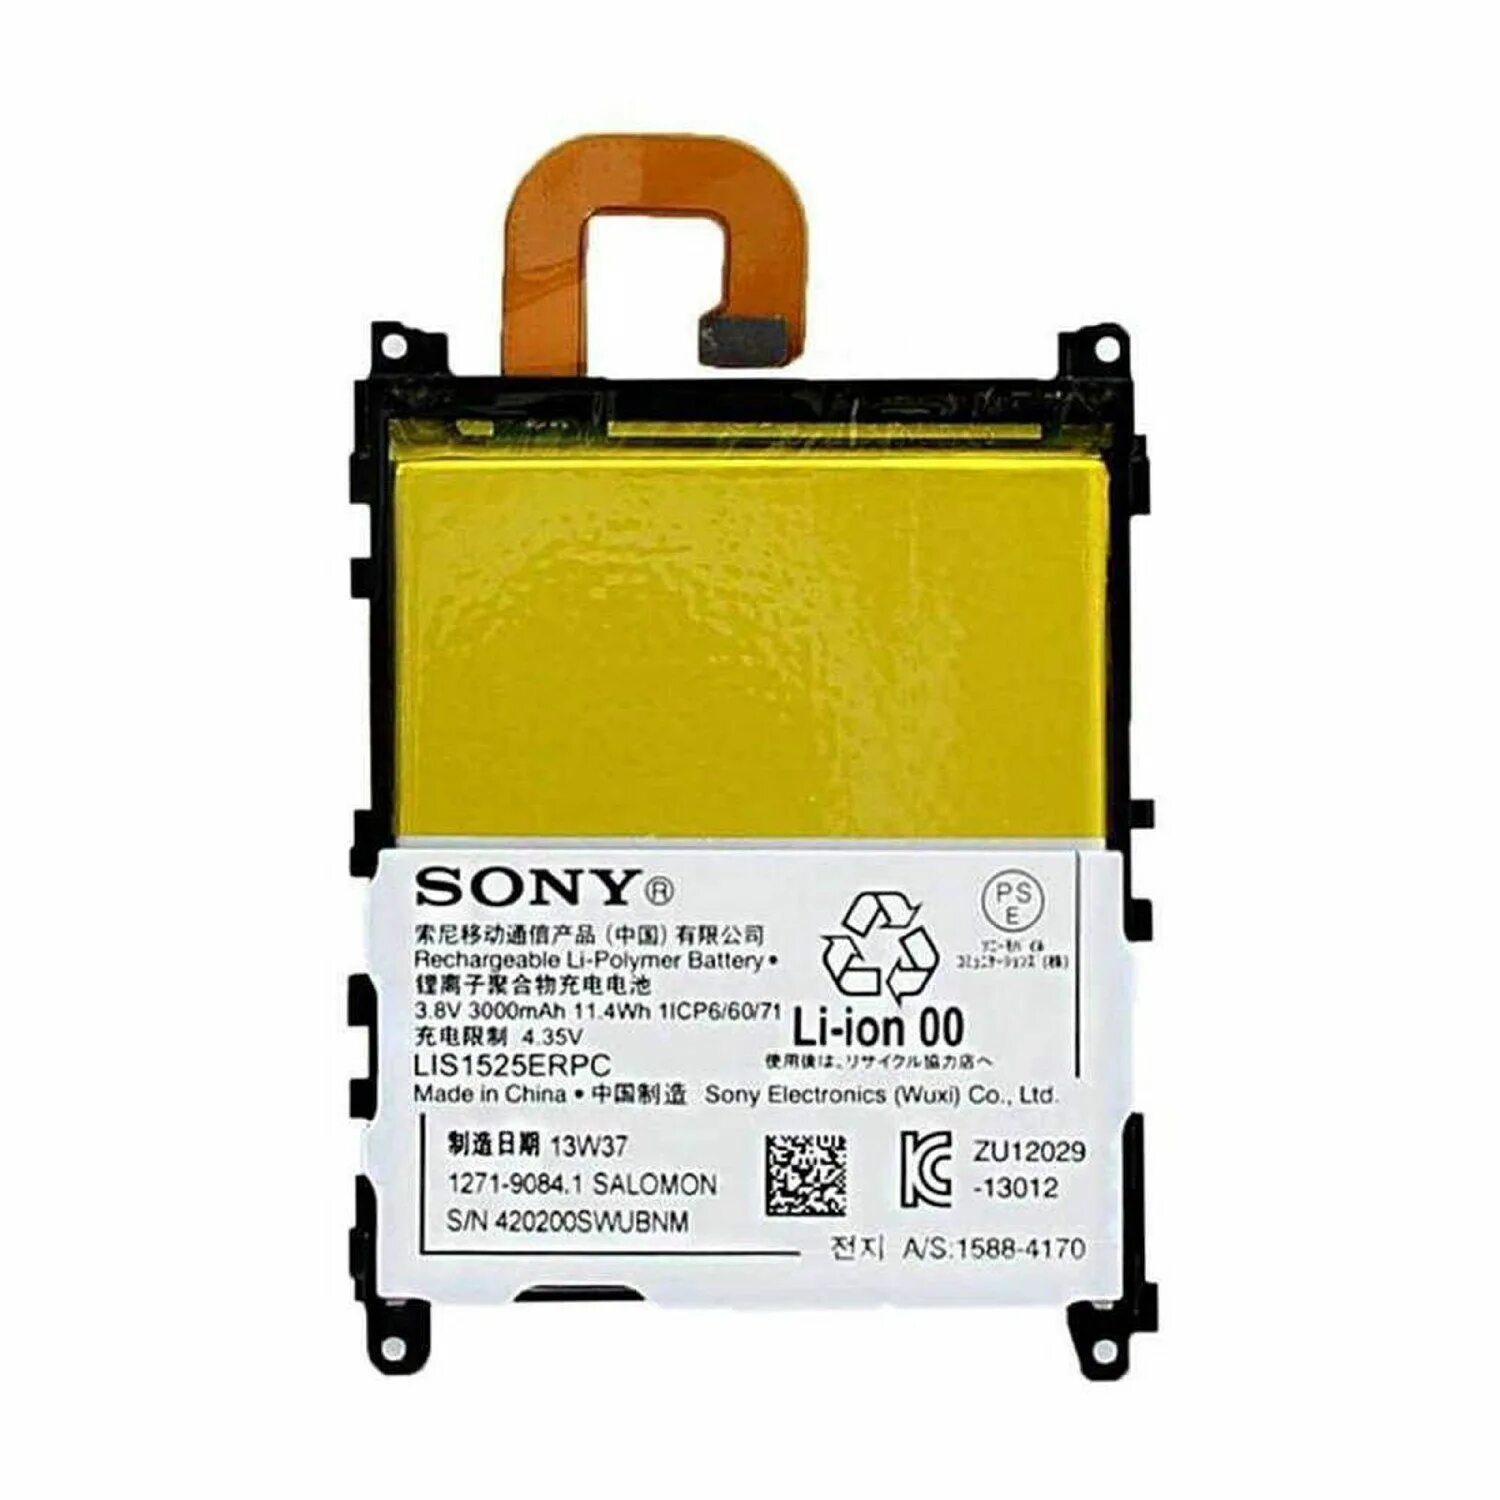 Lis1525erpc для Sony Xperia z1. Аккумулятор для Sony zu12029. Sony Electronics Wuxi.